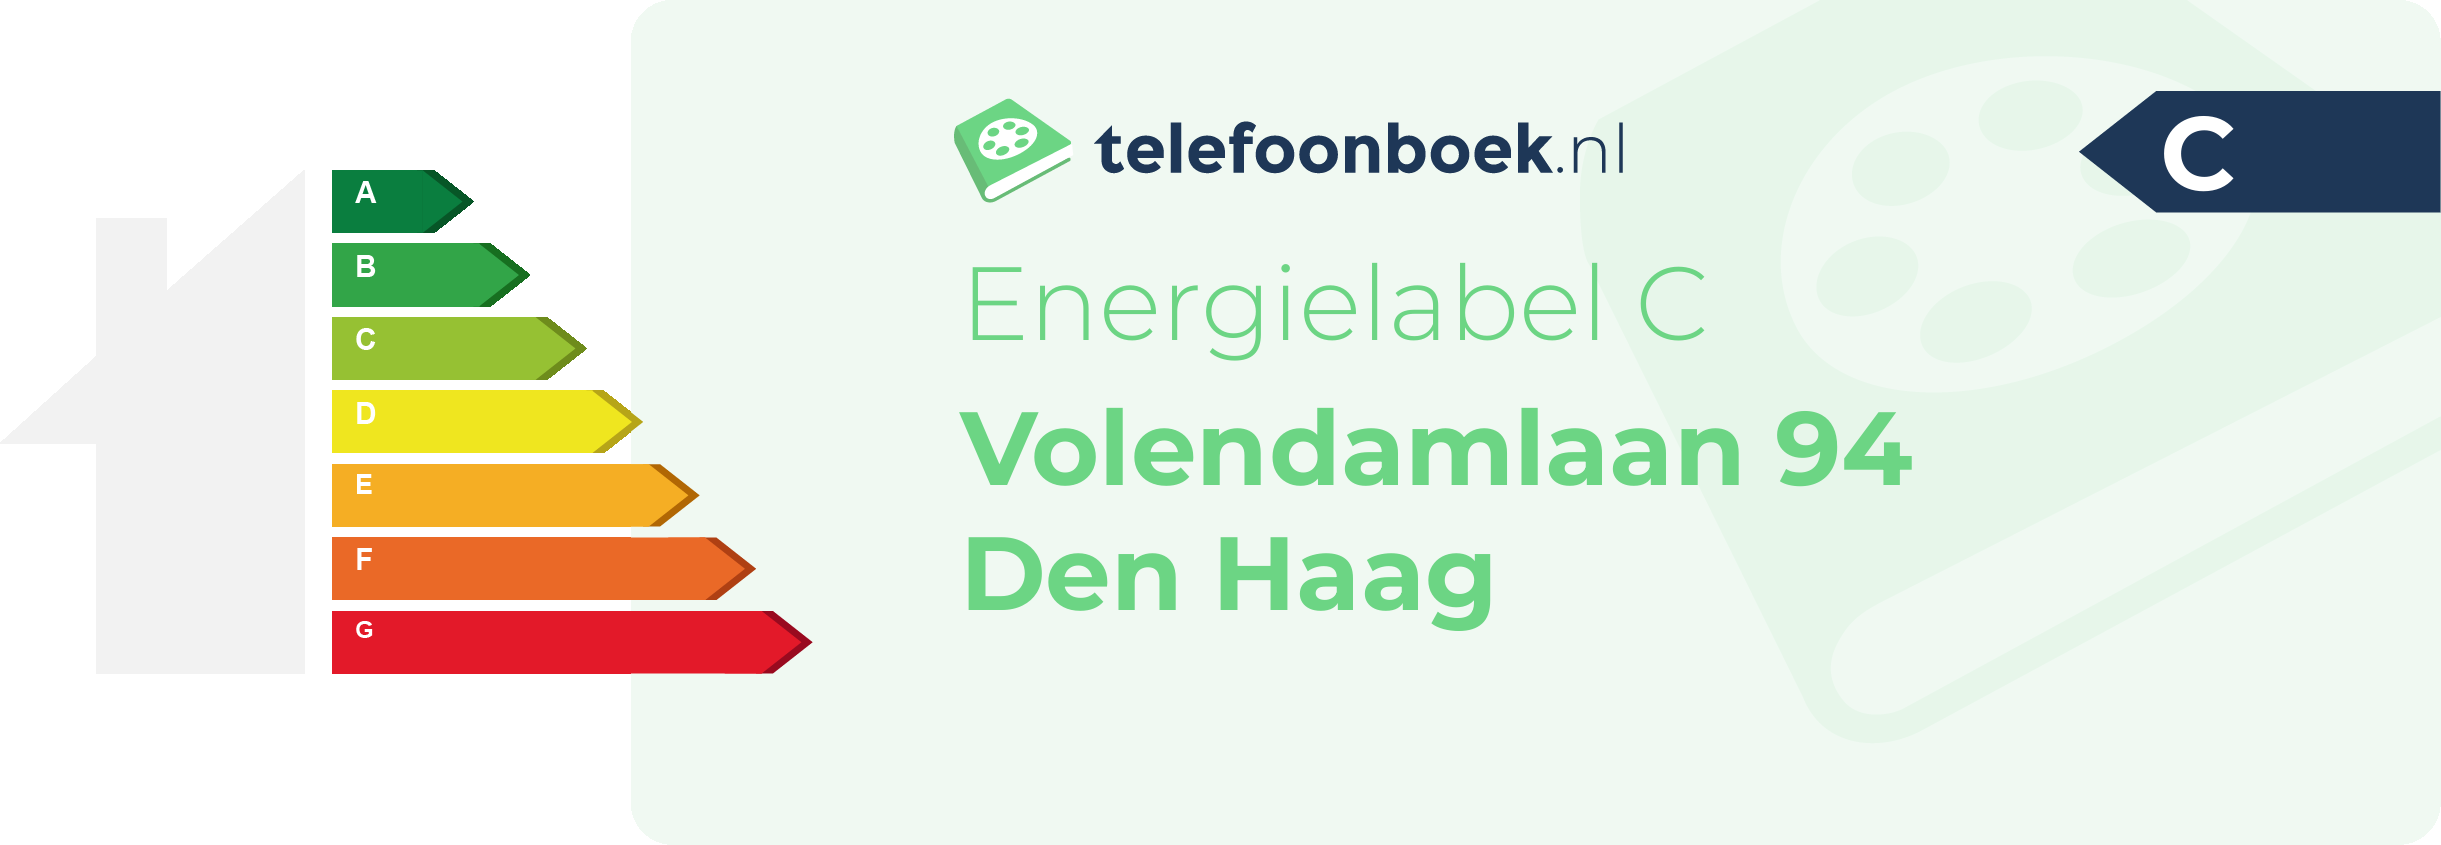 Energielabel Volendamlaan 94 Den Haag